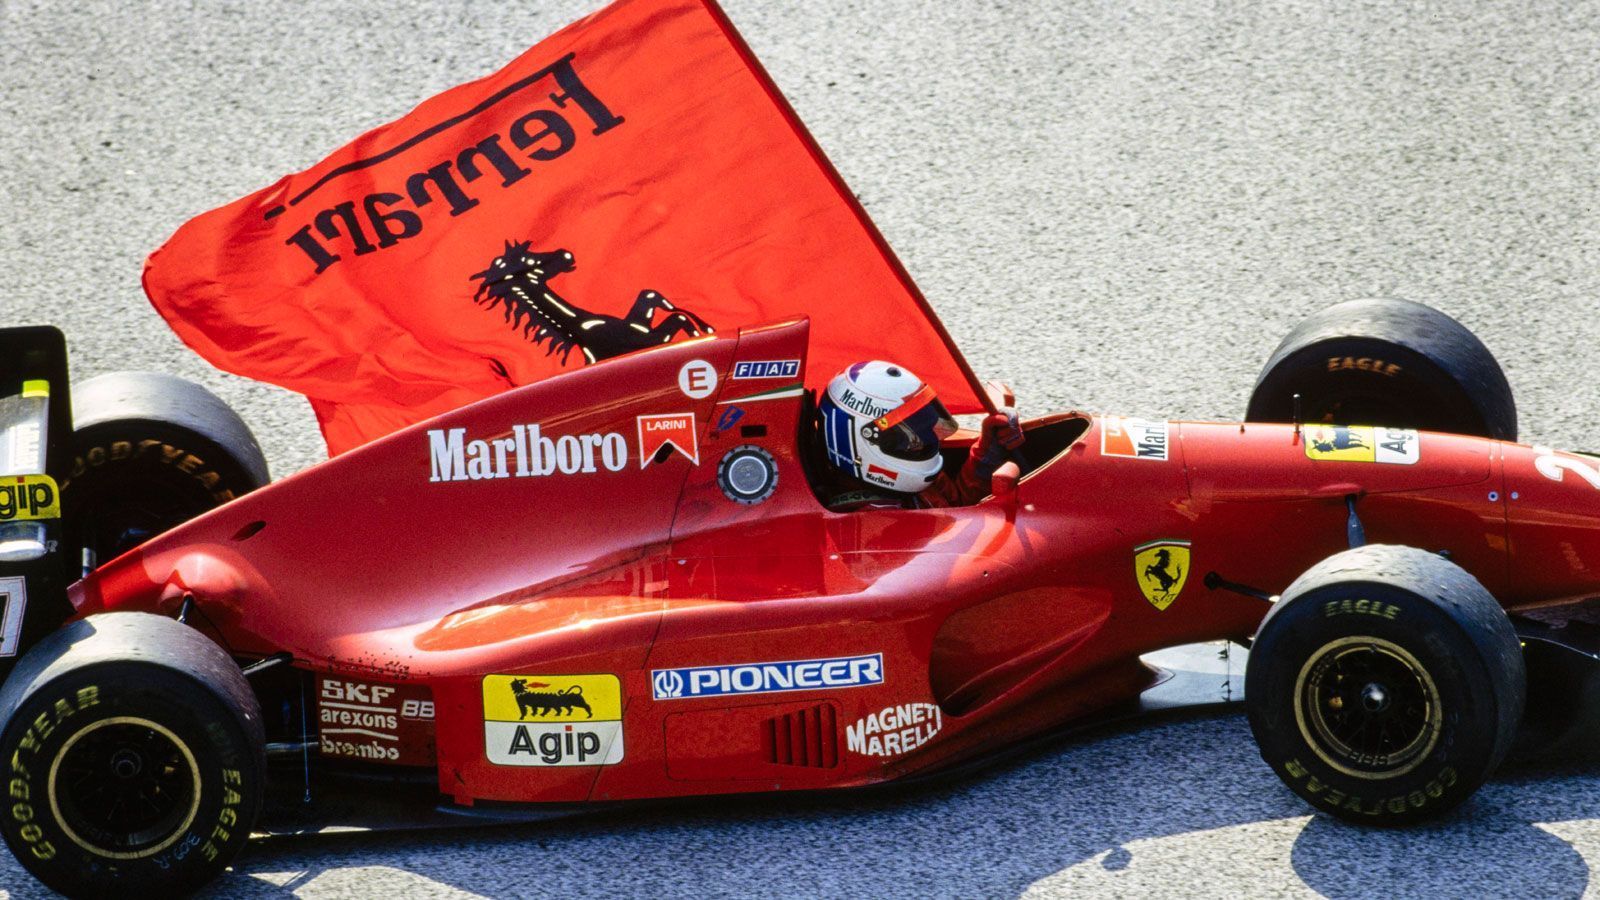 
                <strong>Nicola Larini (Ferrari) - 1994</strong><br>
                Der italienische DTM-Champion von 1993  ersetzt den verletzten Jean Alesi für zwei Rennen zu Beginn der Formel 1-Saison 1994. Allerdings werden keine hohen Erwartungen in den Testfahrer gesetzt, schließlich wartet er seit seinem Formel 1-Debüt 1987 auf seinen ersten WM-Punkt. Beim Großen Preis von San Marino ist es dann schließlich soweit: Larini muss sich am Ende nur Rennsieger Michael Schumacher geschlagen geben. Durch die tödlichen Unfälle von Roland Ratzenberger und Ayrton Senna ist das Rennwochenende in Imola ein trauriger und unvergessener Teil der Formel 1-Geschichte, Larini wird sich daher nur mit gedämpfter Freude an den Rennsonntag erinnern.
              